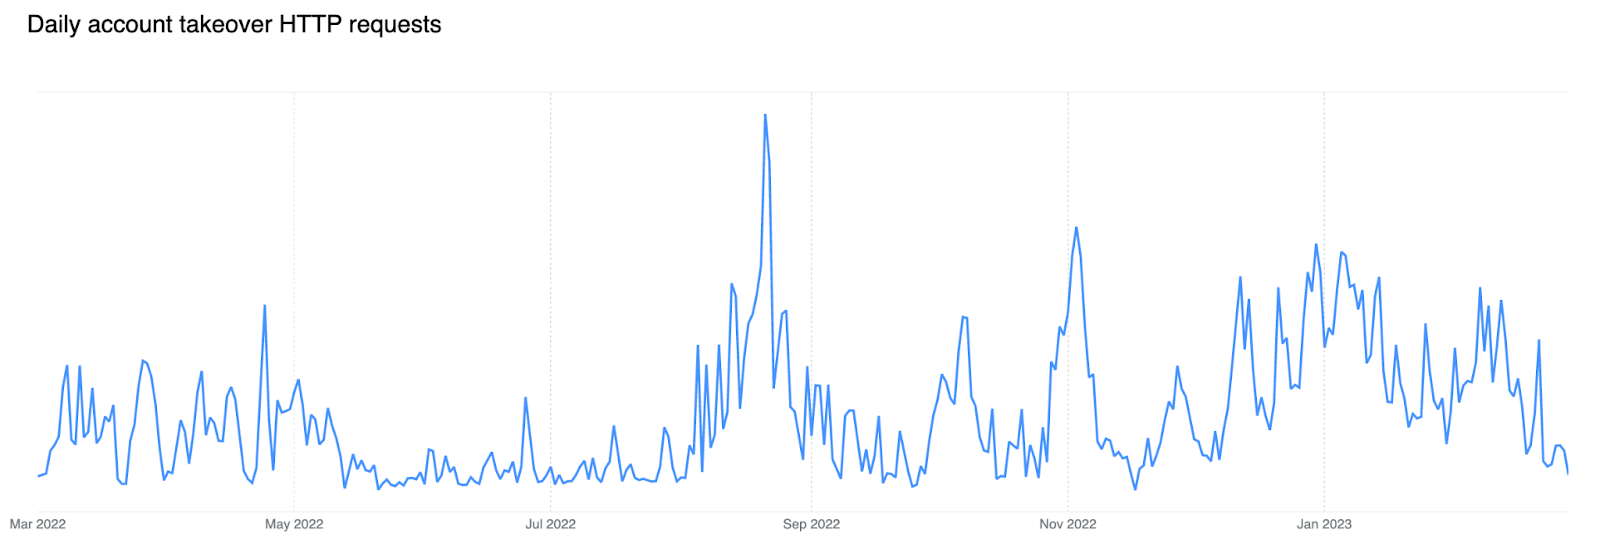 Solicitudes HTTP de apropiación de cuentas al día en los últimos 12 meses